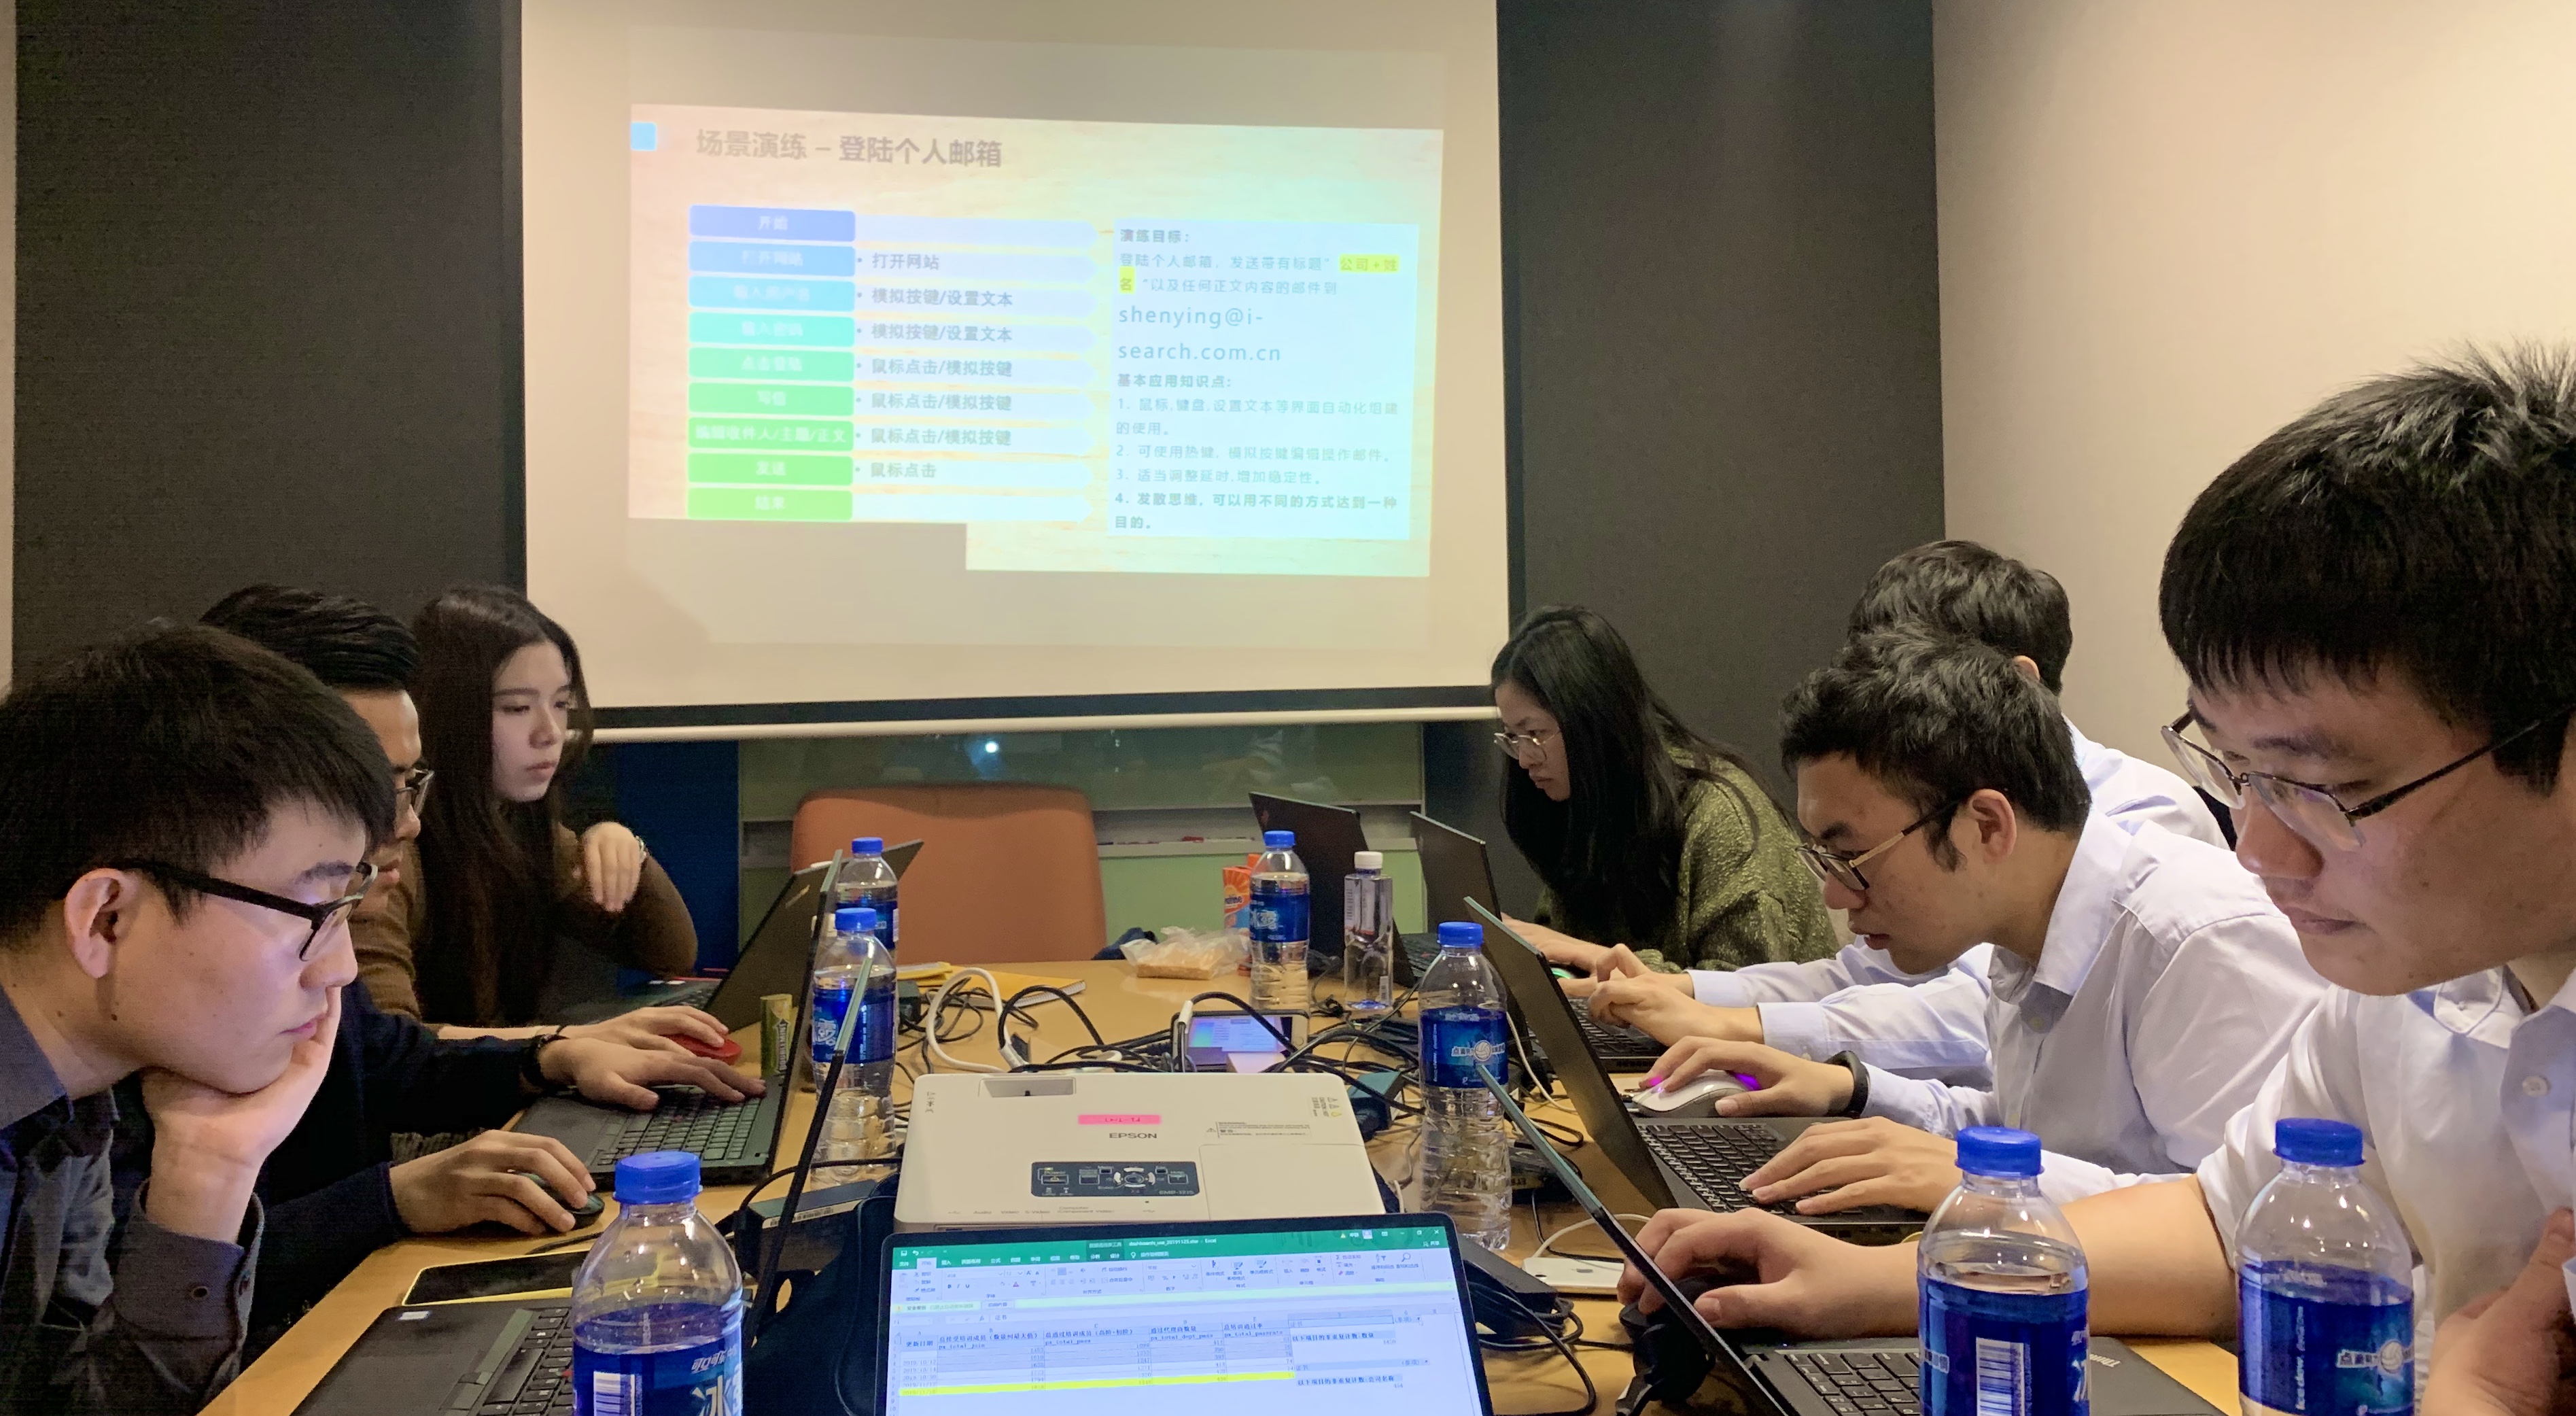 iS-RPA 技术认证培训 北京 201901125 班